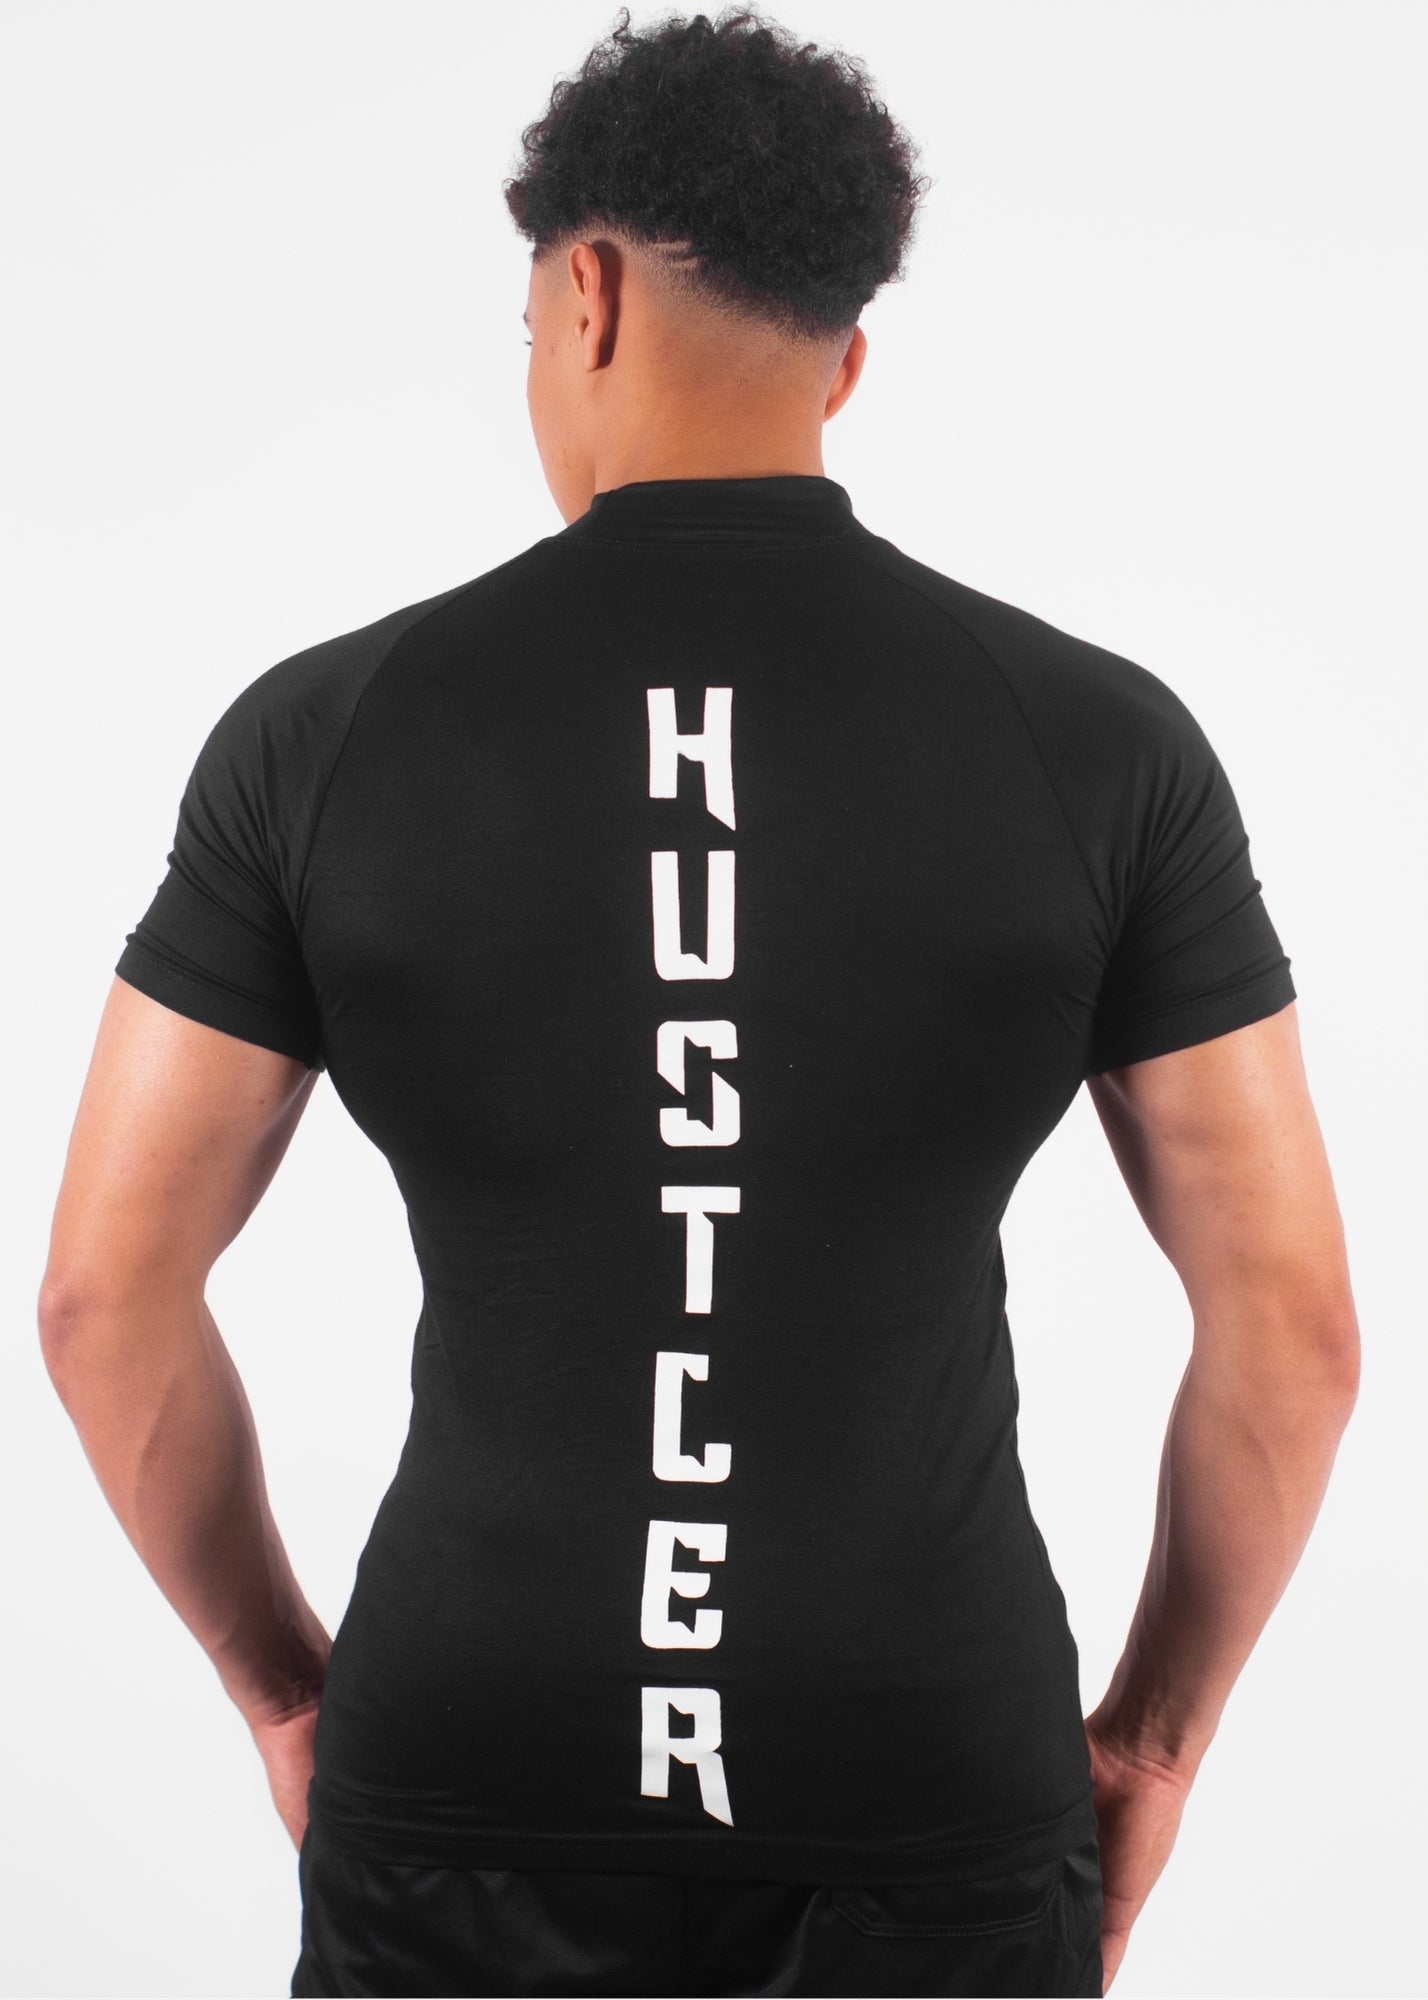 APEX™ Compression T-Shirt "HUSTLER" – NOIR